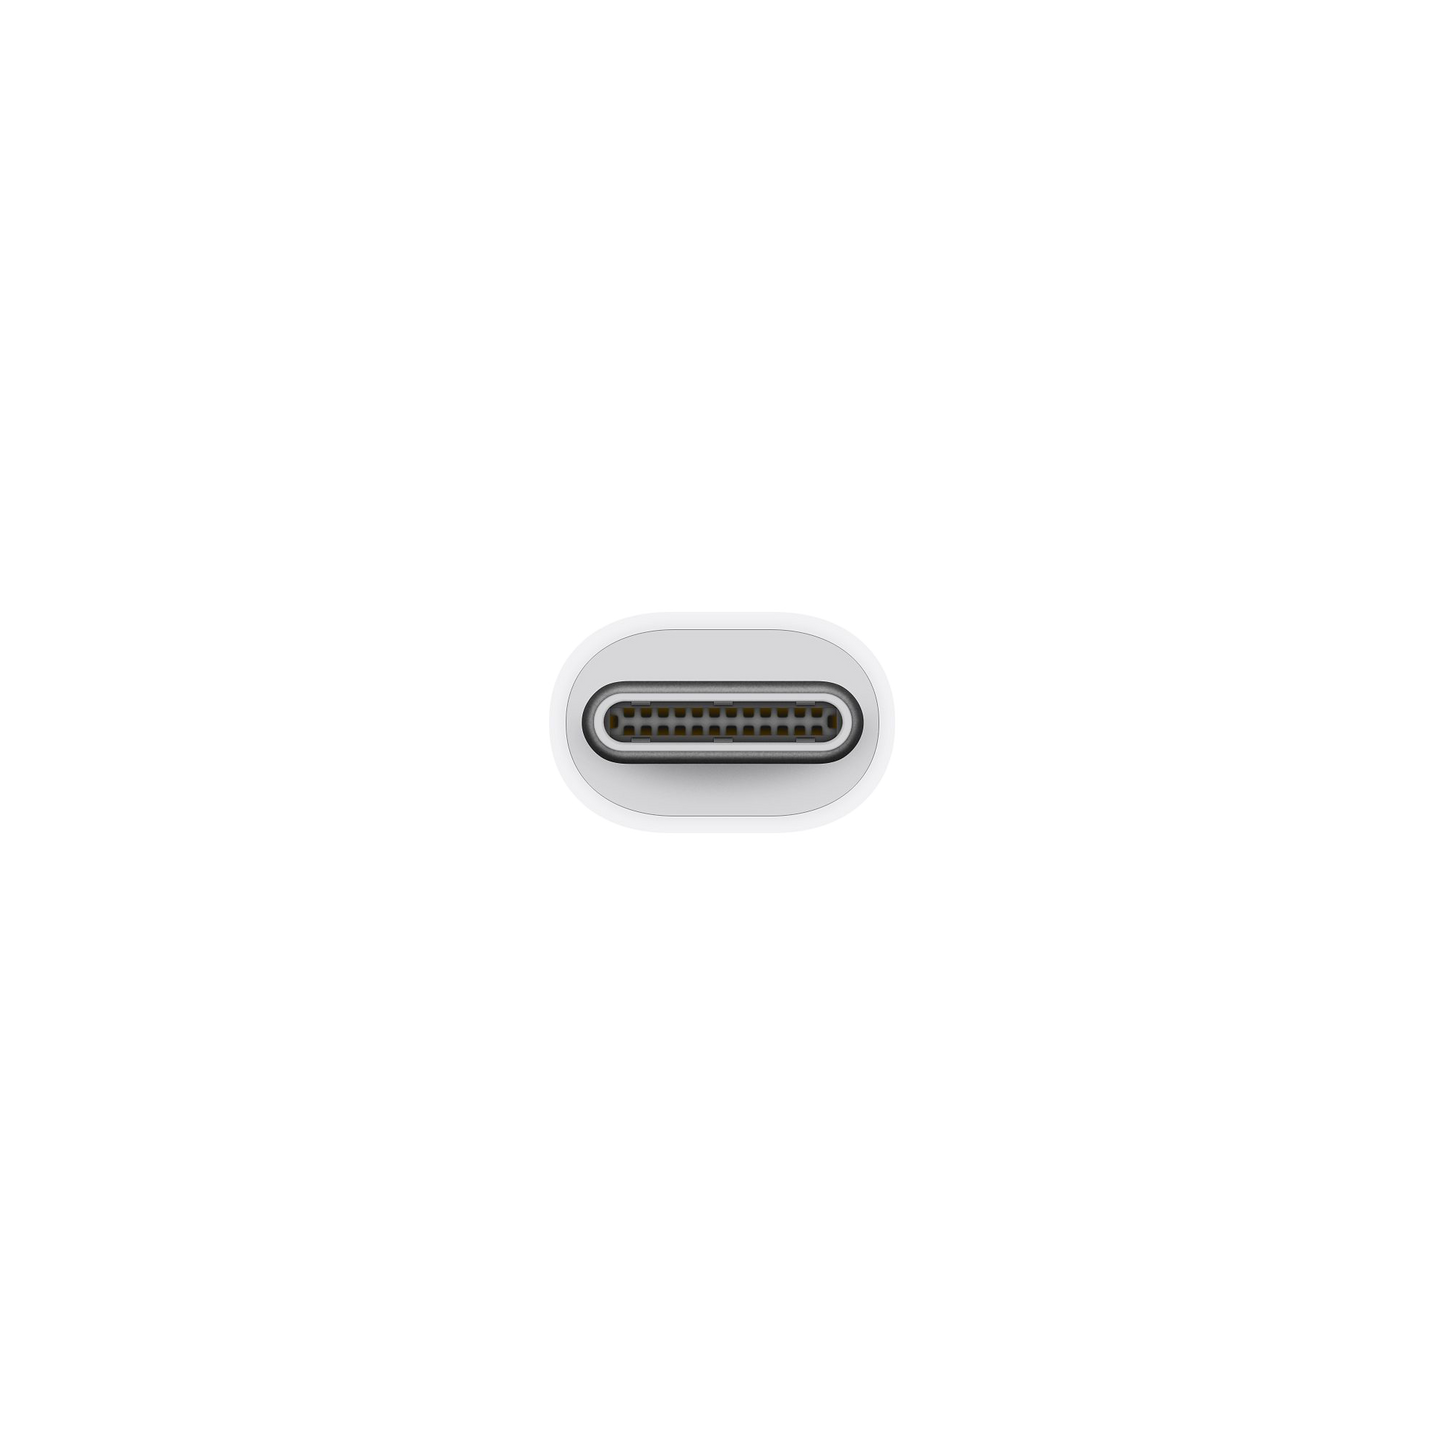 Adaptador de Thunderbolt 3 (USB-C) a Thunderbolt 2